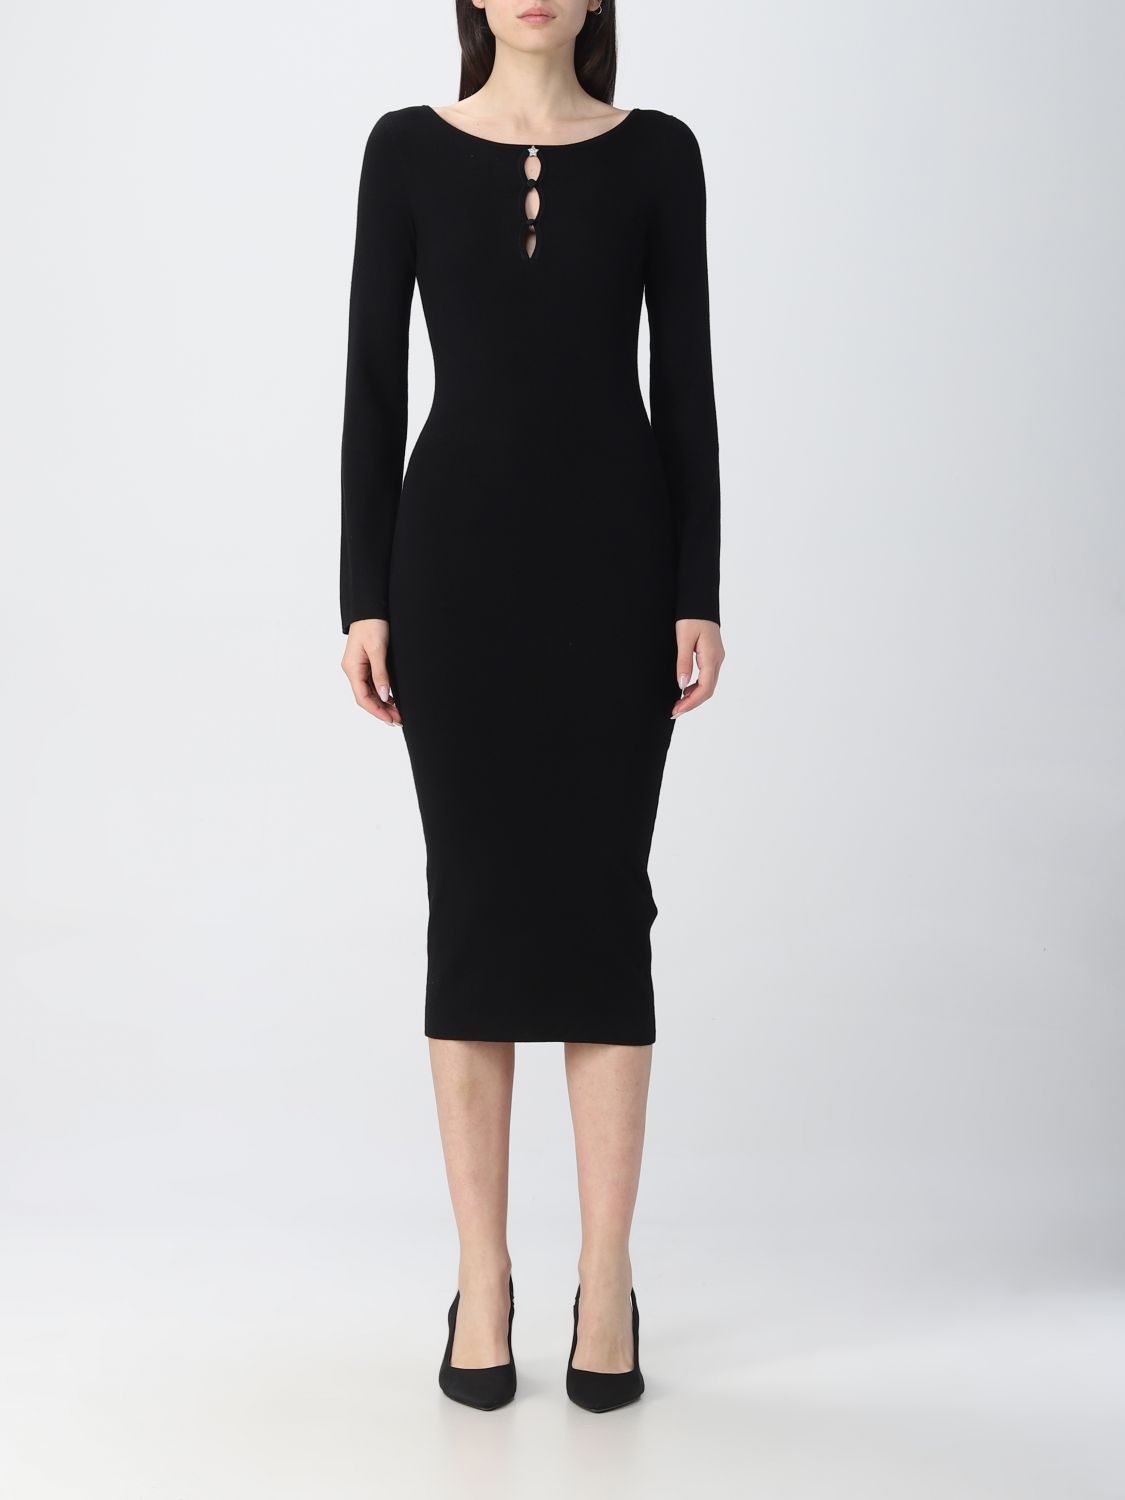 LIU JO: dress for woman - Black | Liu Jo dress WF2072MA49I online on ...